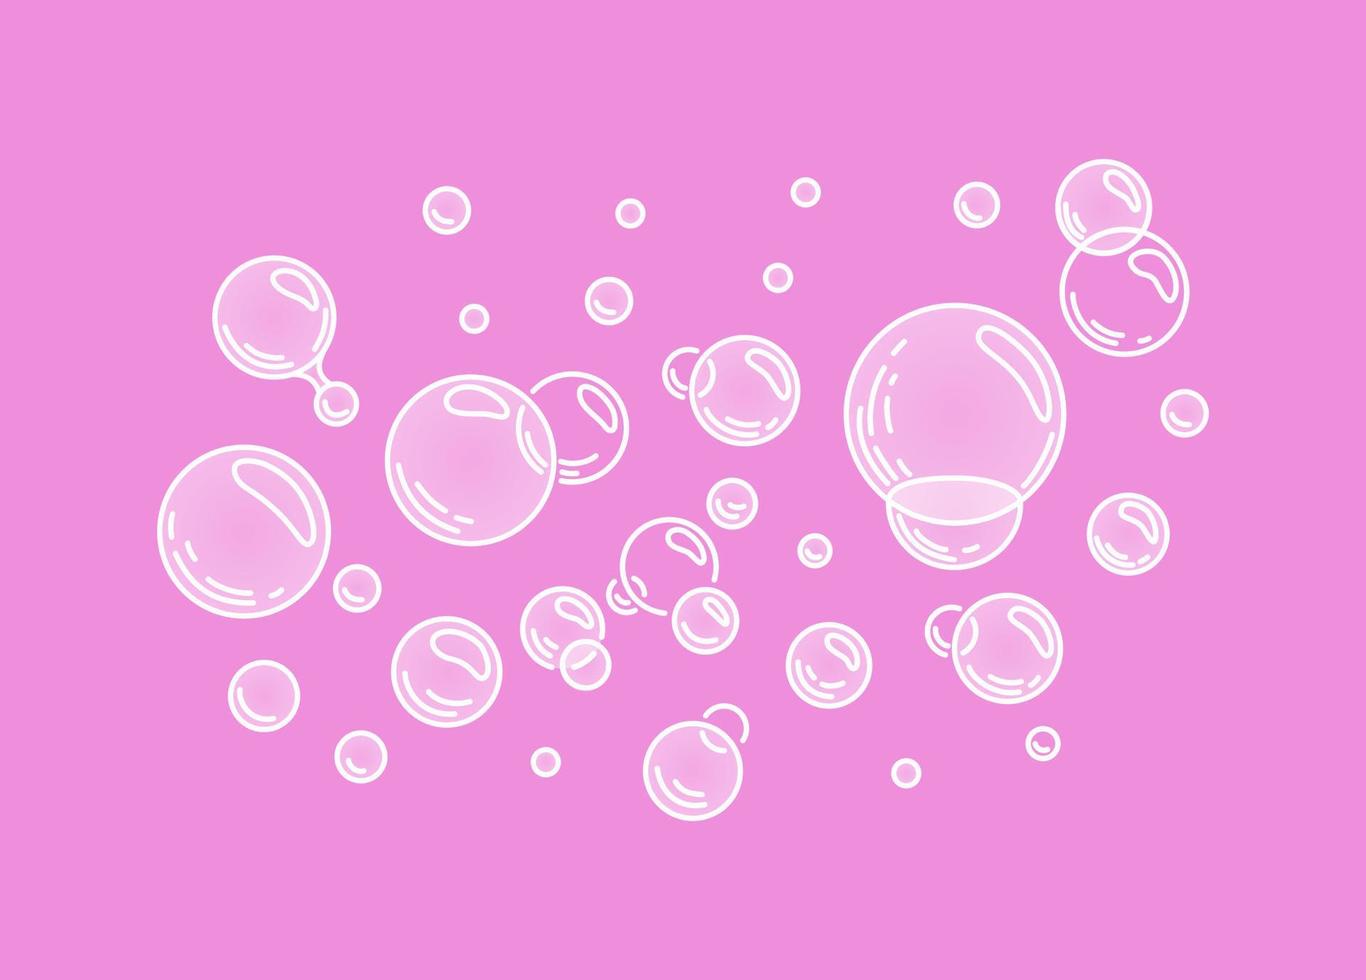 bubbles.zischende luft- oder wasserblasen auf rosa hintergrund. sprudelnde Funkeln. Gummi. Vektor-Cartoon-Illustration. Vektor-Illustration. vektor